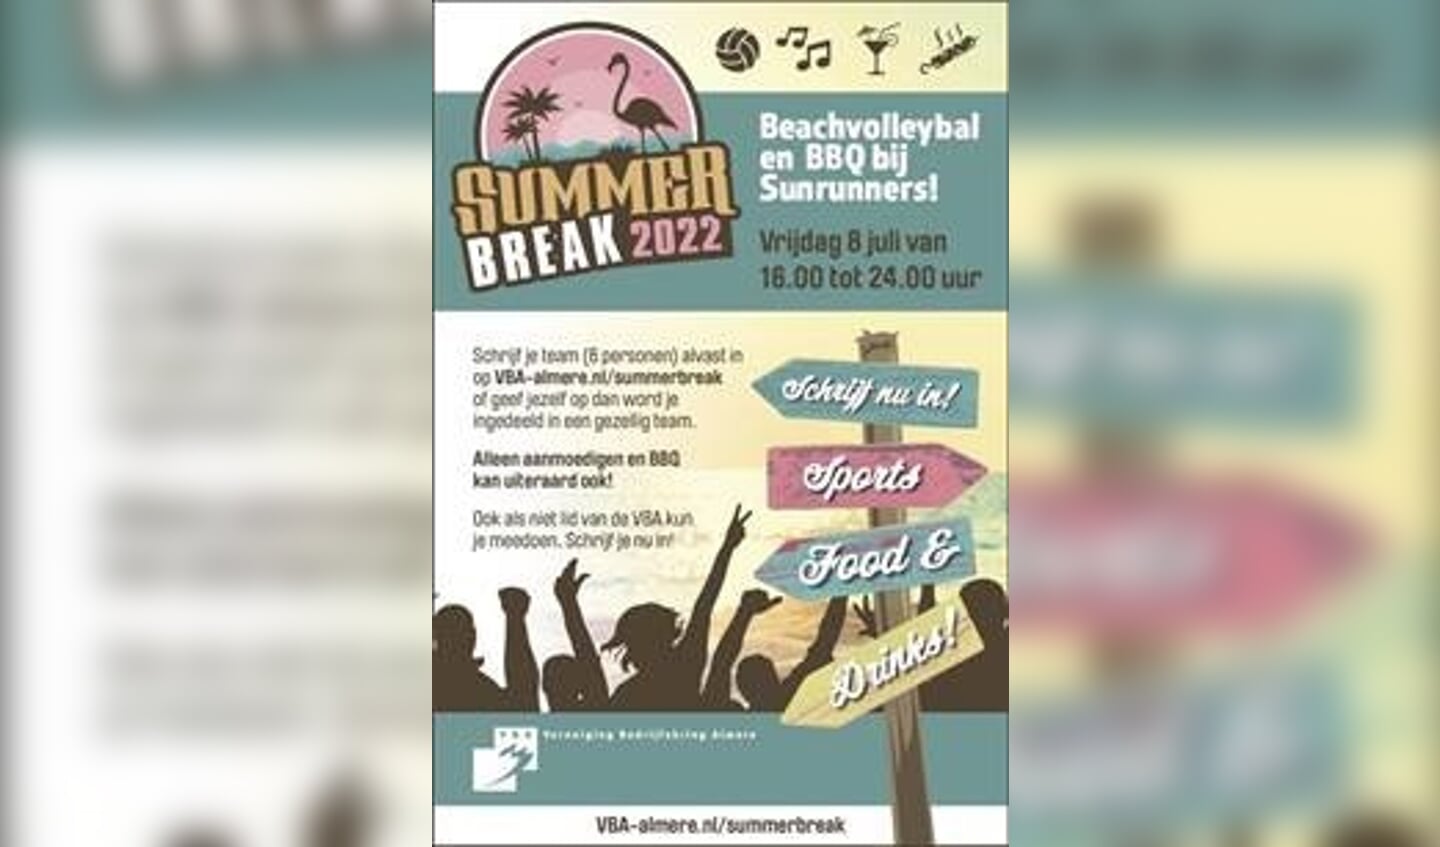 Het Summer Break Event vindt plaats op 8 juli aanstaande. 